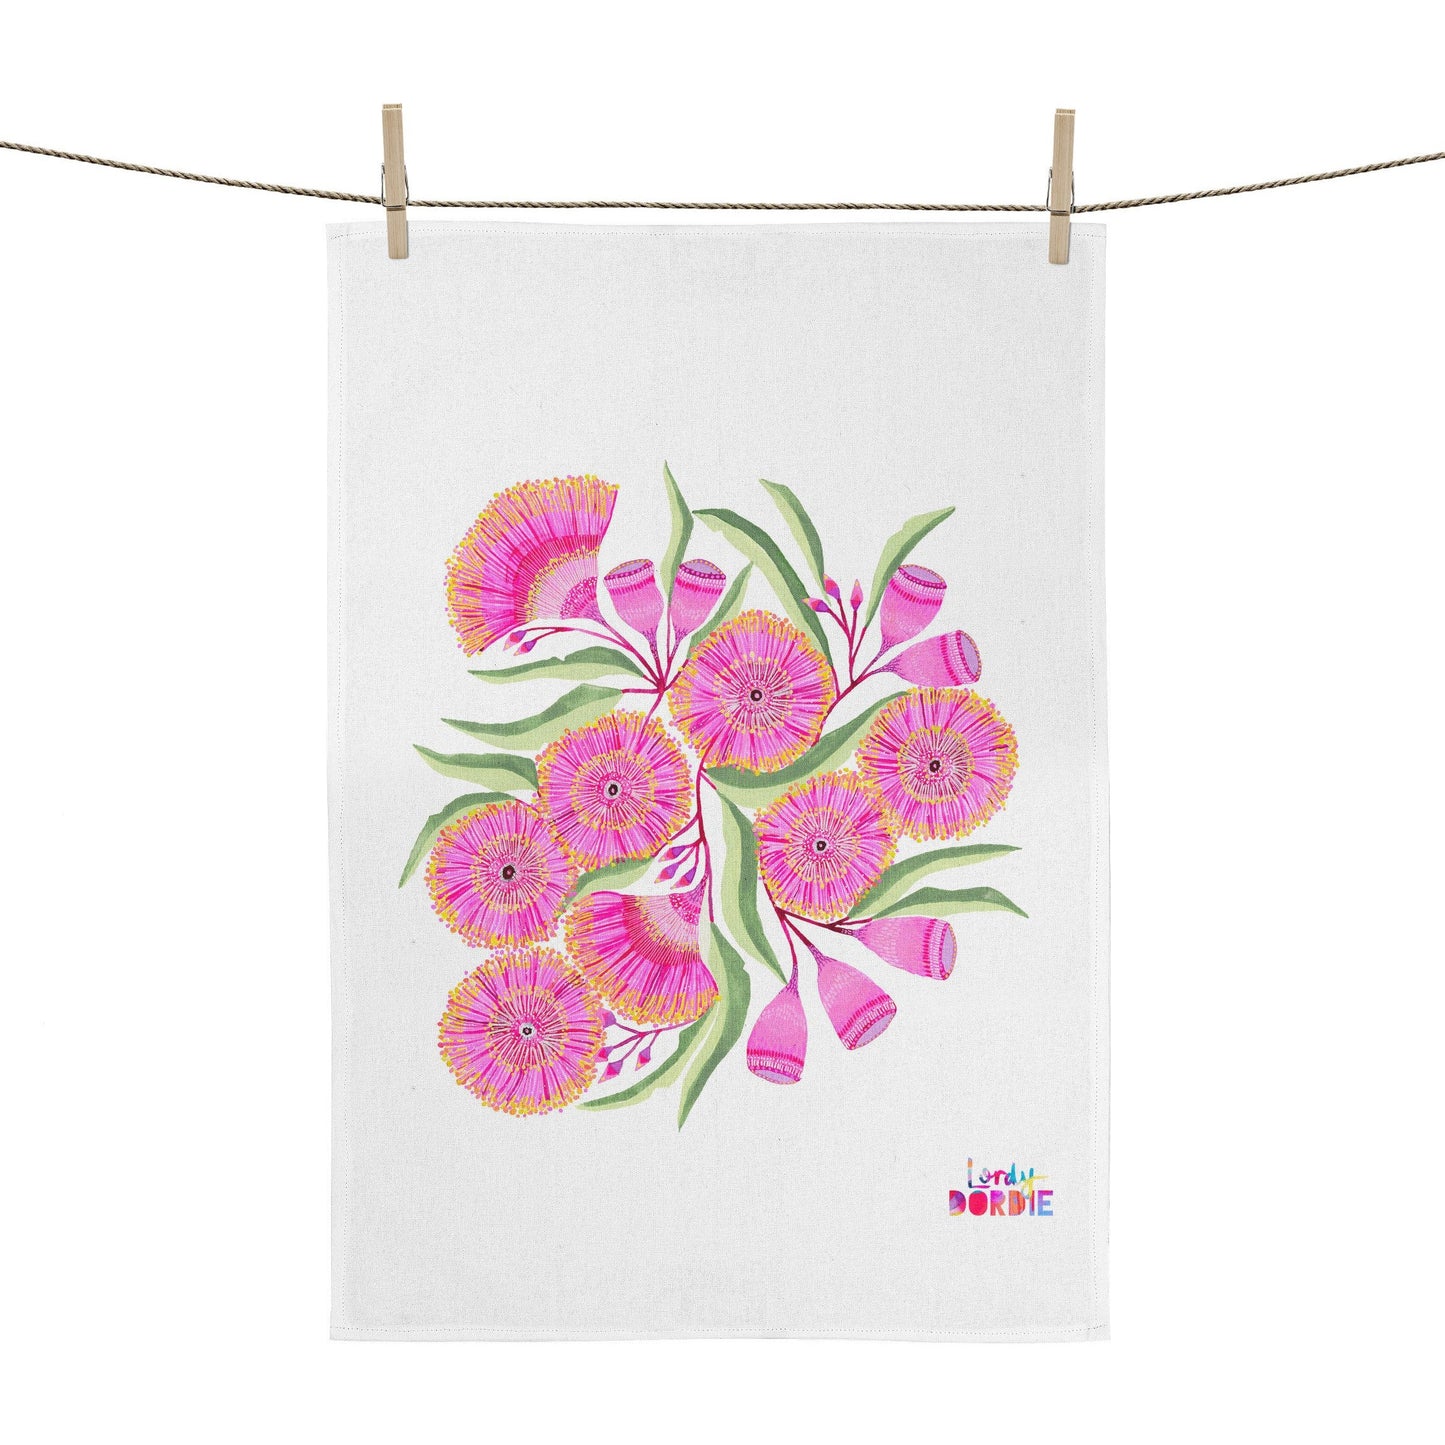 Art Tea Towel - Gum Blossoms (designed & printed in Australia)